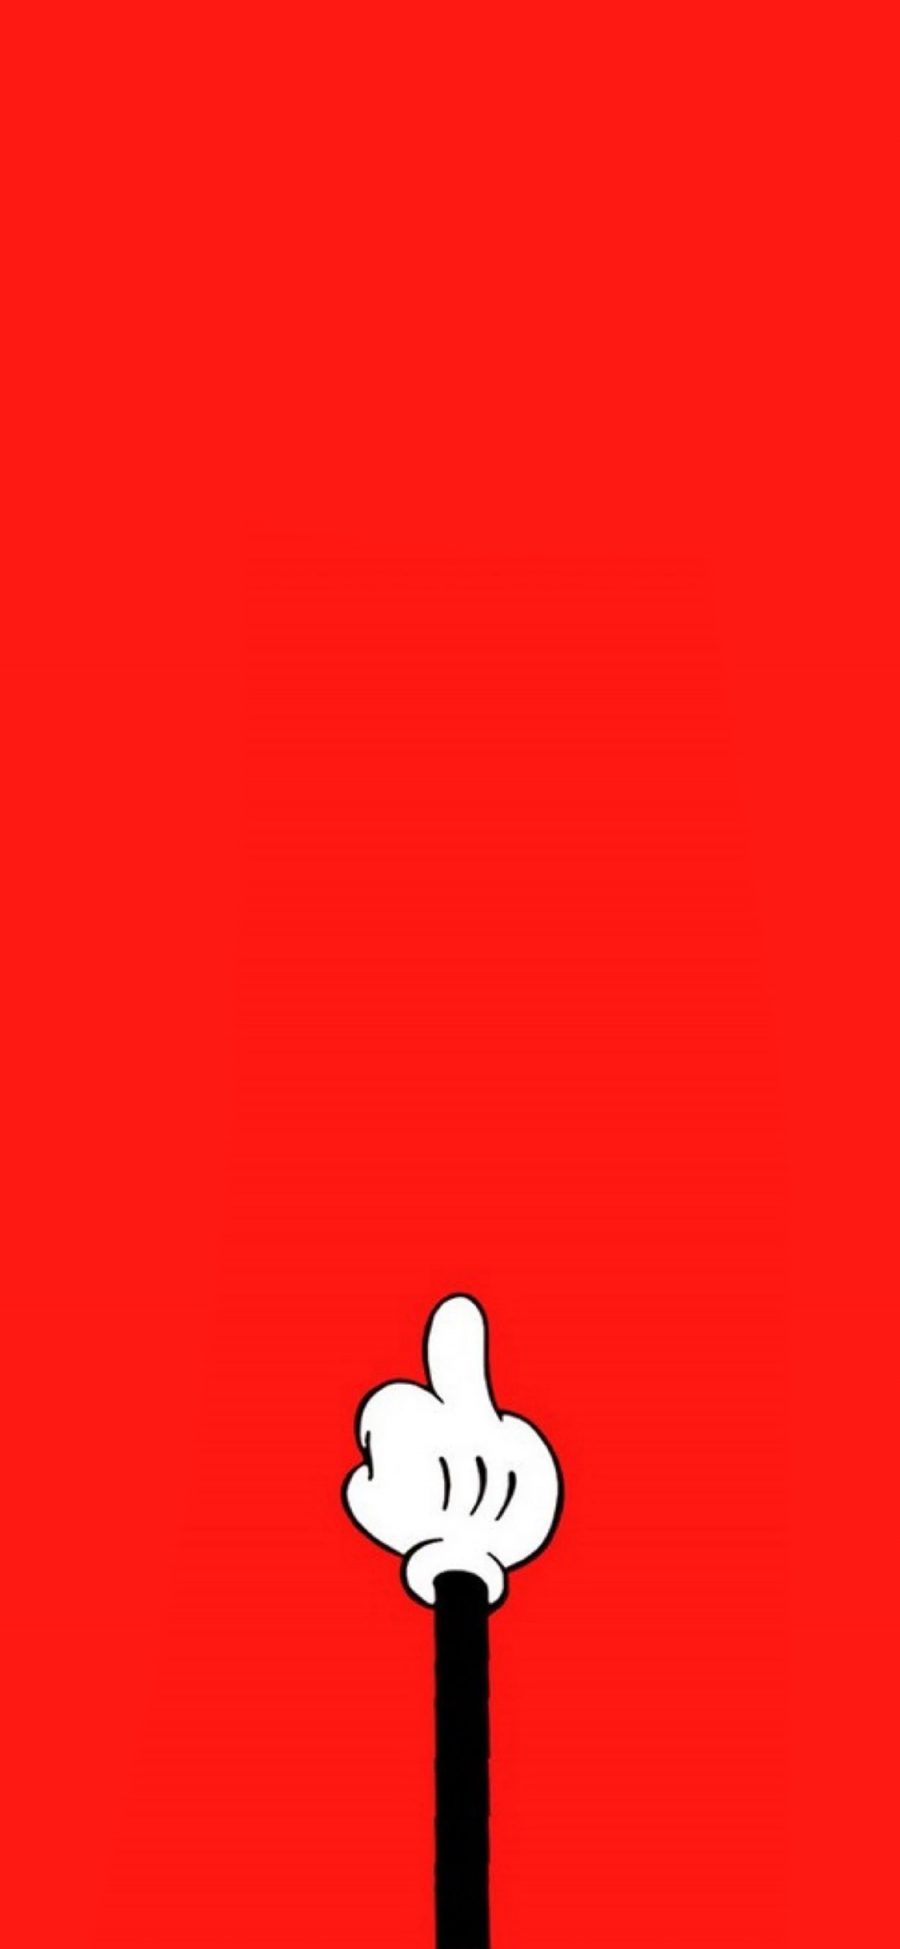 [2436×1125]中指 卡通 米奇 红色 动画 苹果手机动漫壁纸图片